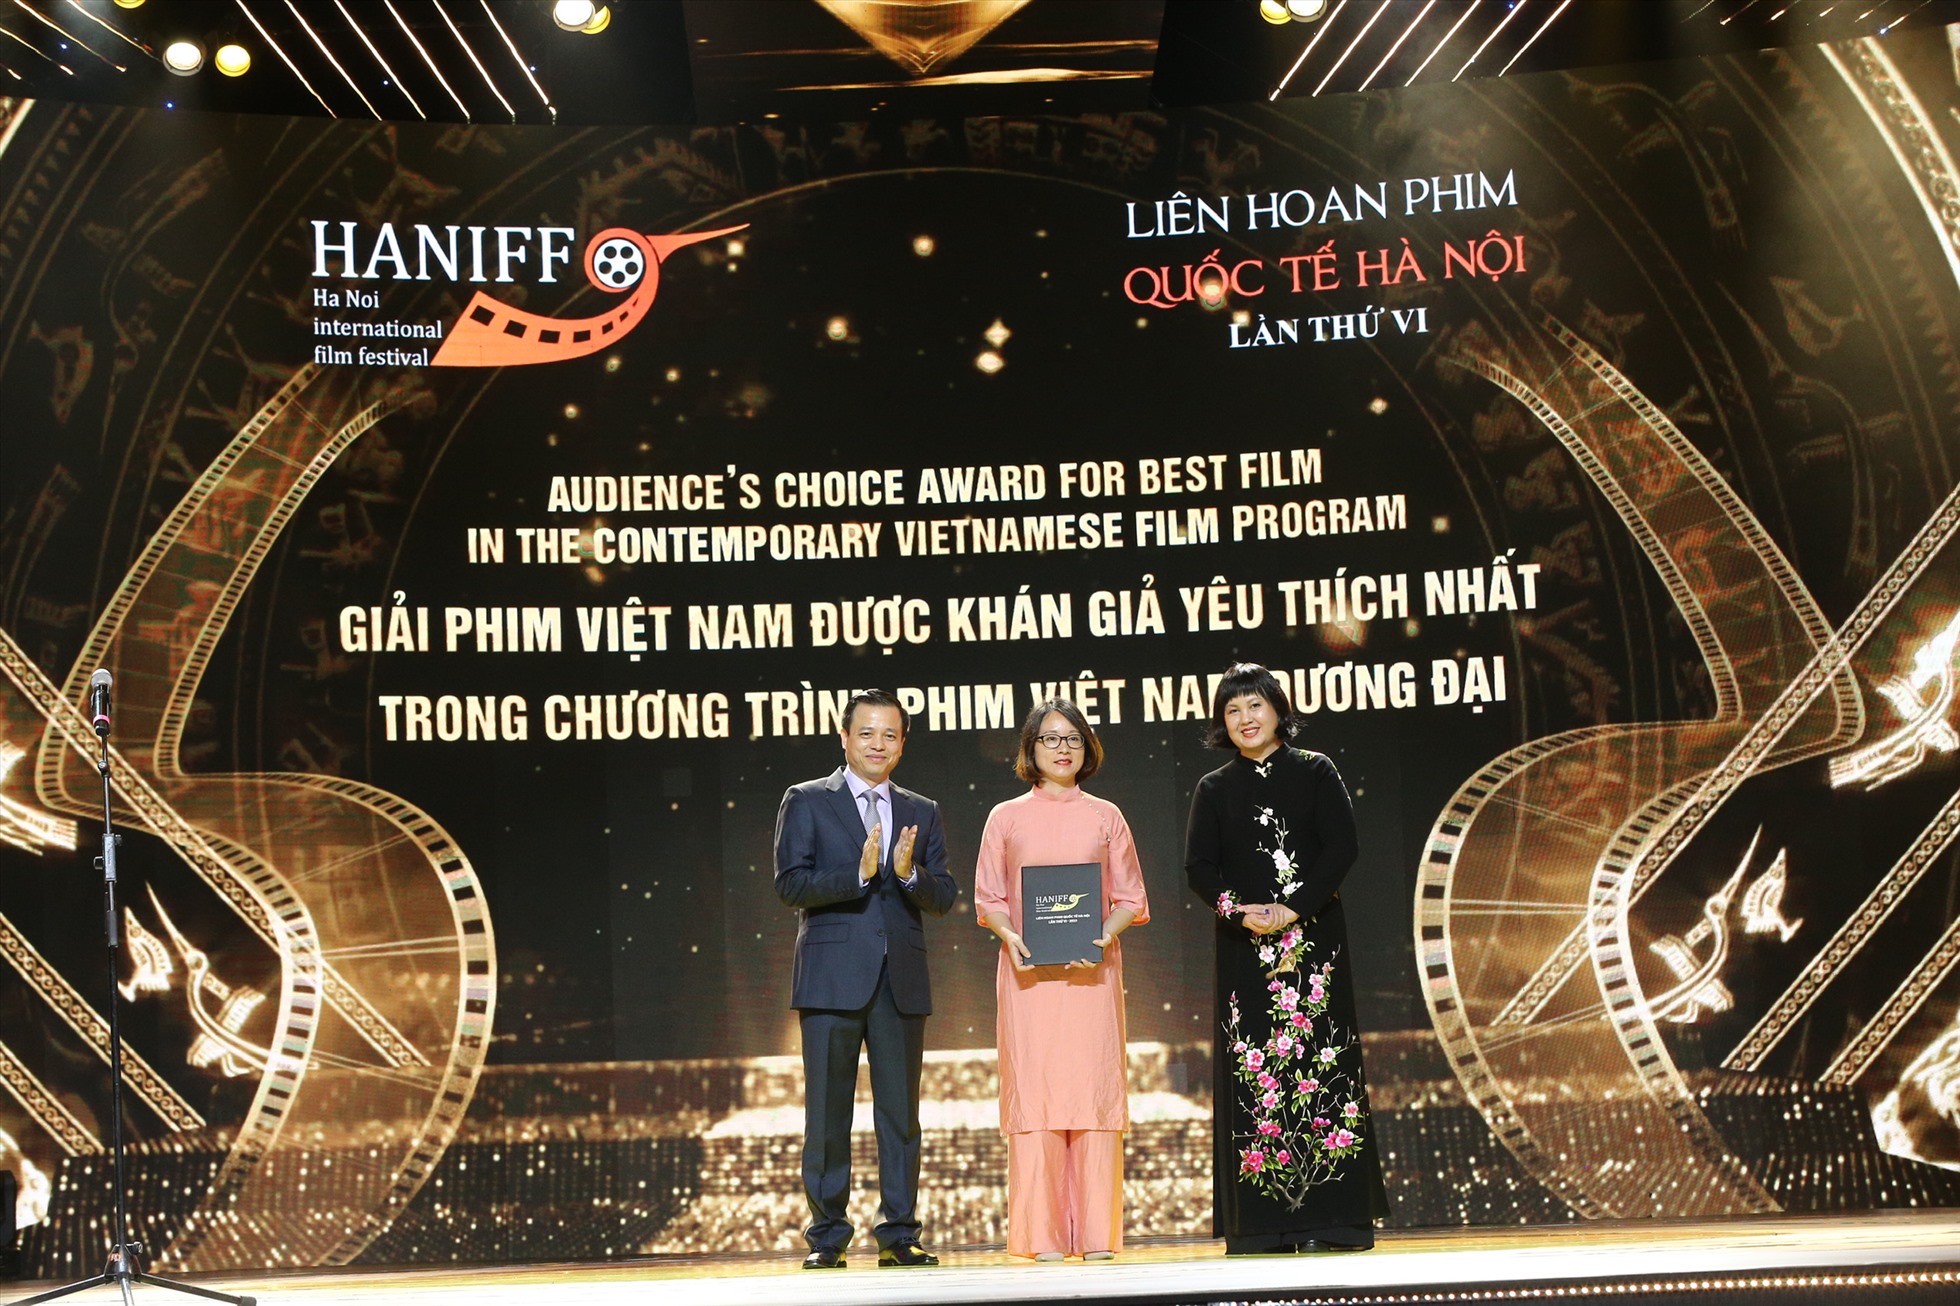 Giải Phim Việt Nam được yêu thích nhất trong chương trình phim Việt Nam đương đại được trao cho Bố già - Việt Nam